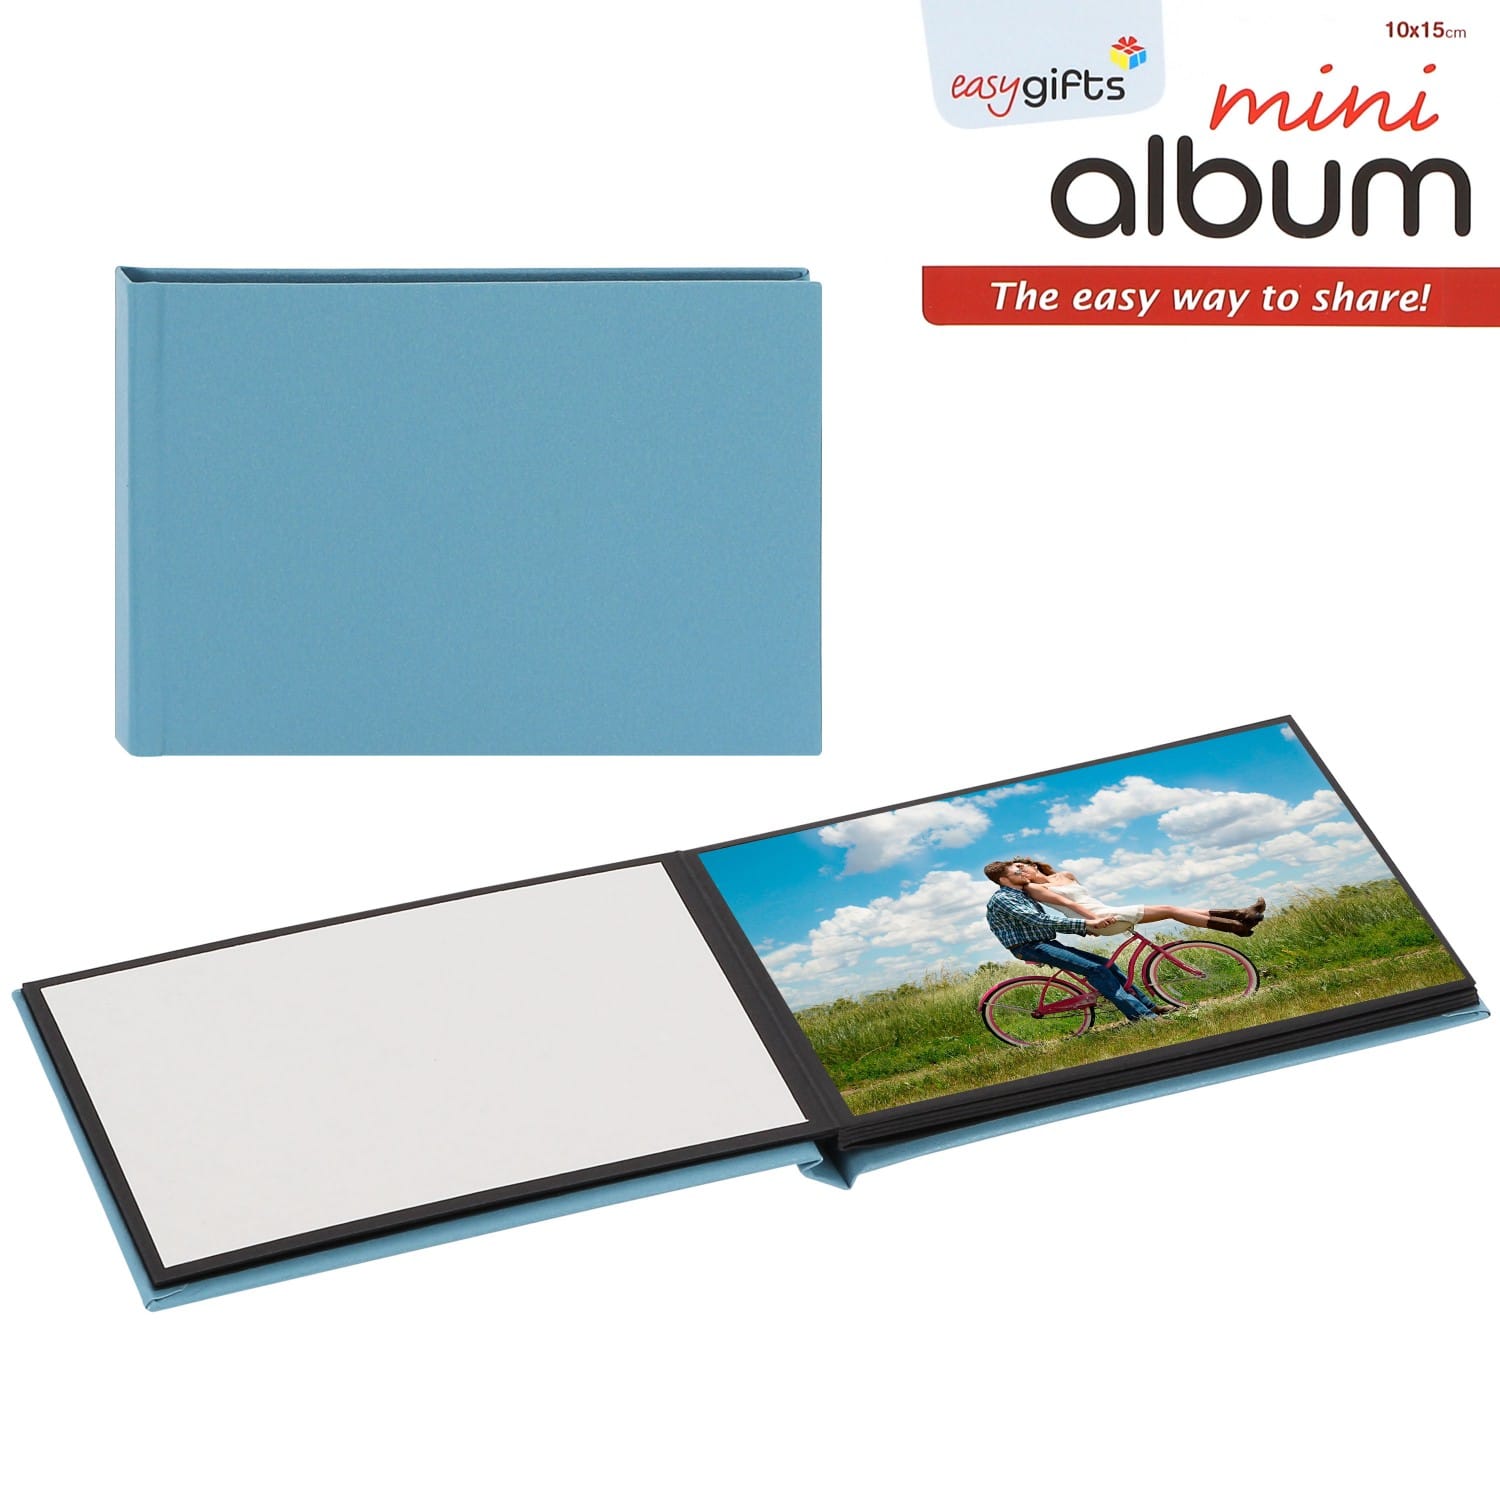 Mini album I GIFTS adhésif EASYALBUM - 10 pages noires - 10 photos 10x15cm  - Couverture Bleue 16x11cm